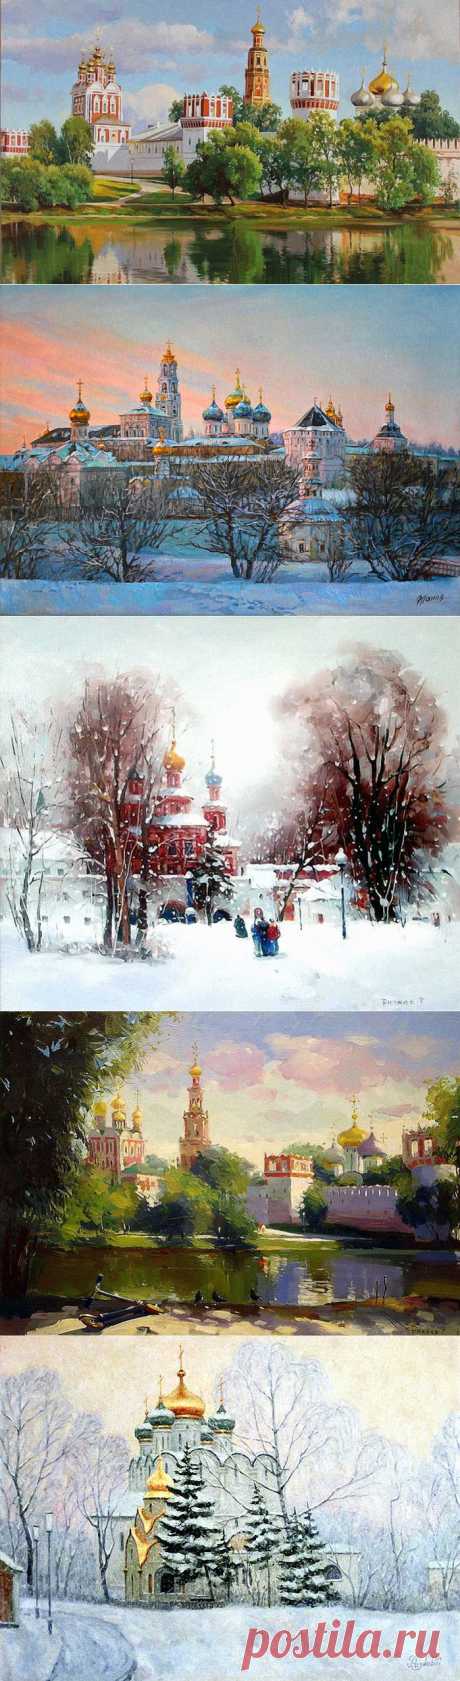 Новодевичий монастырь в изобразительном искусстве